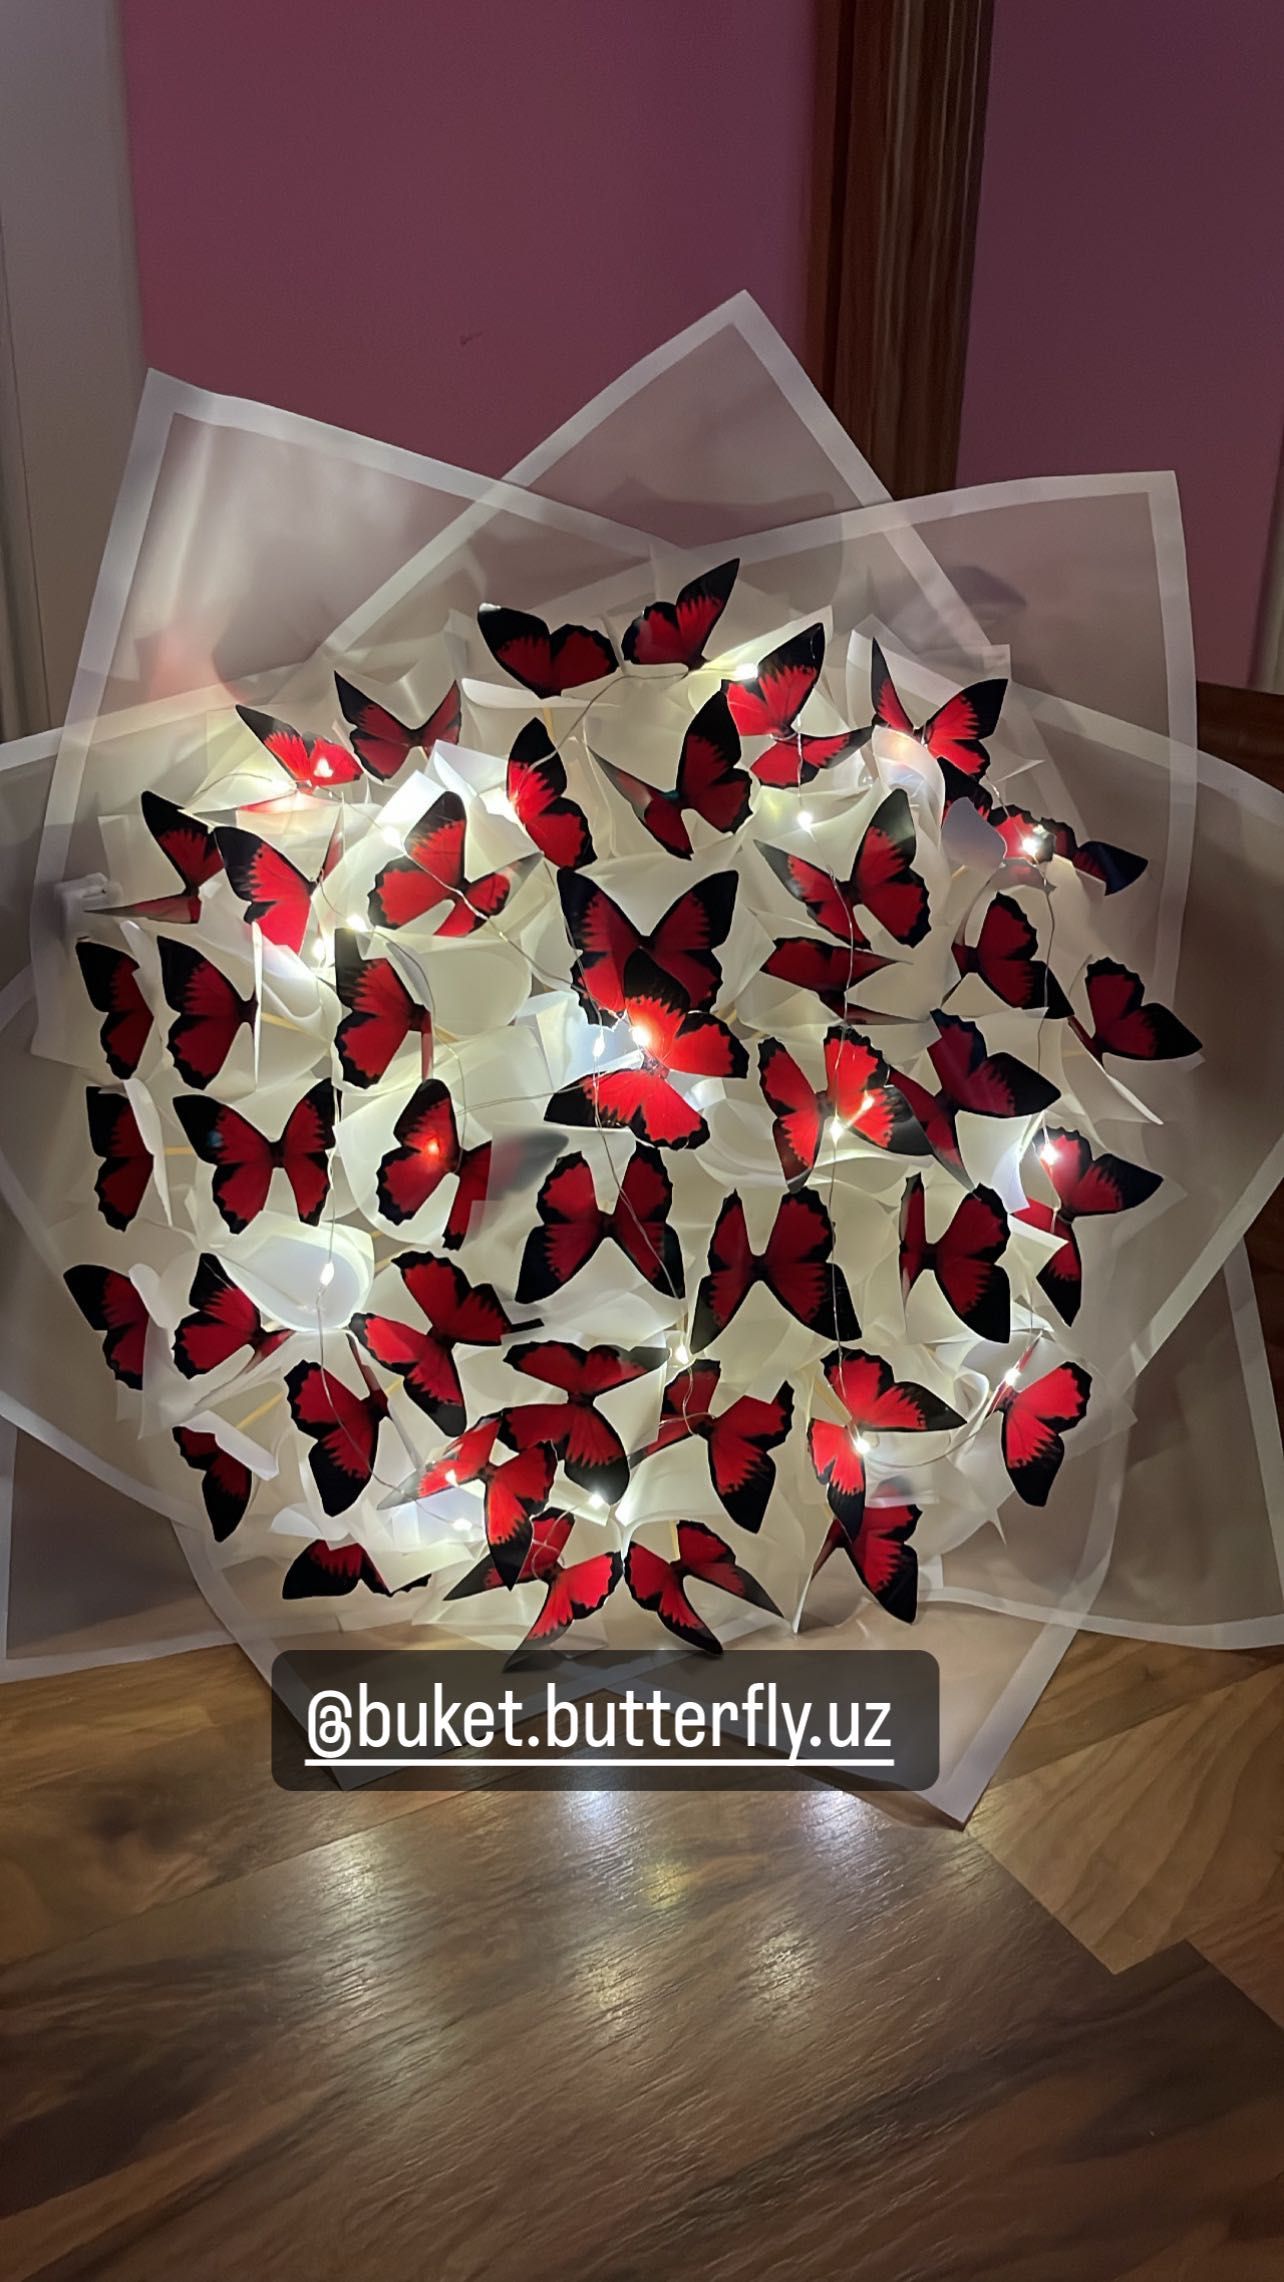 Букет из бабочек по доступной цене